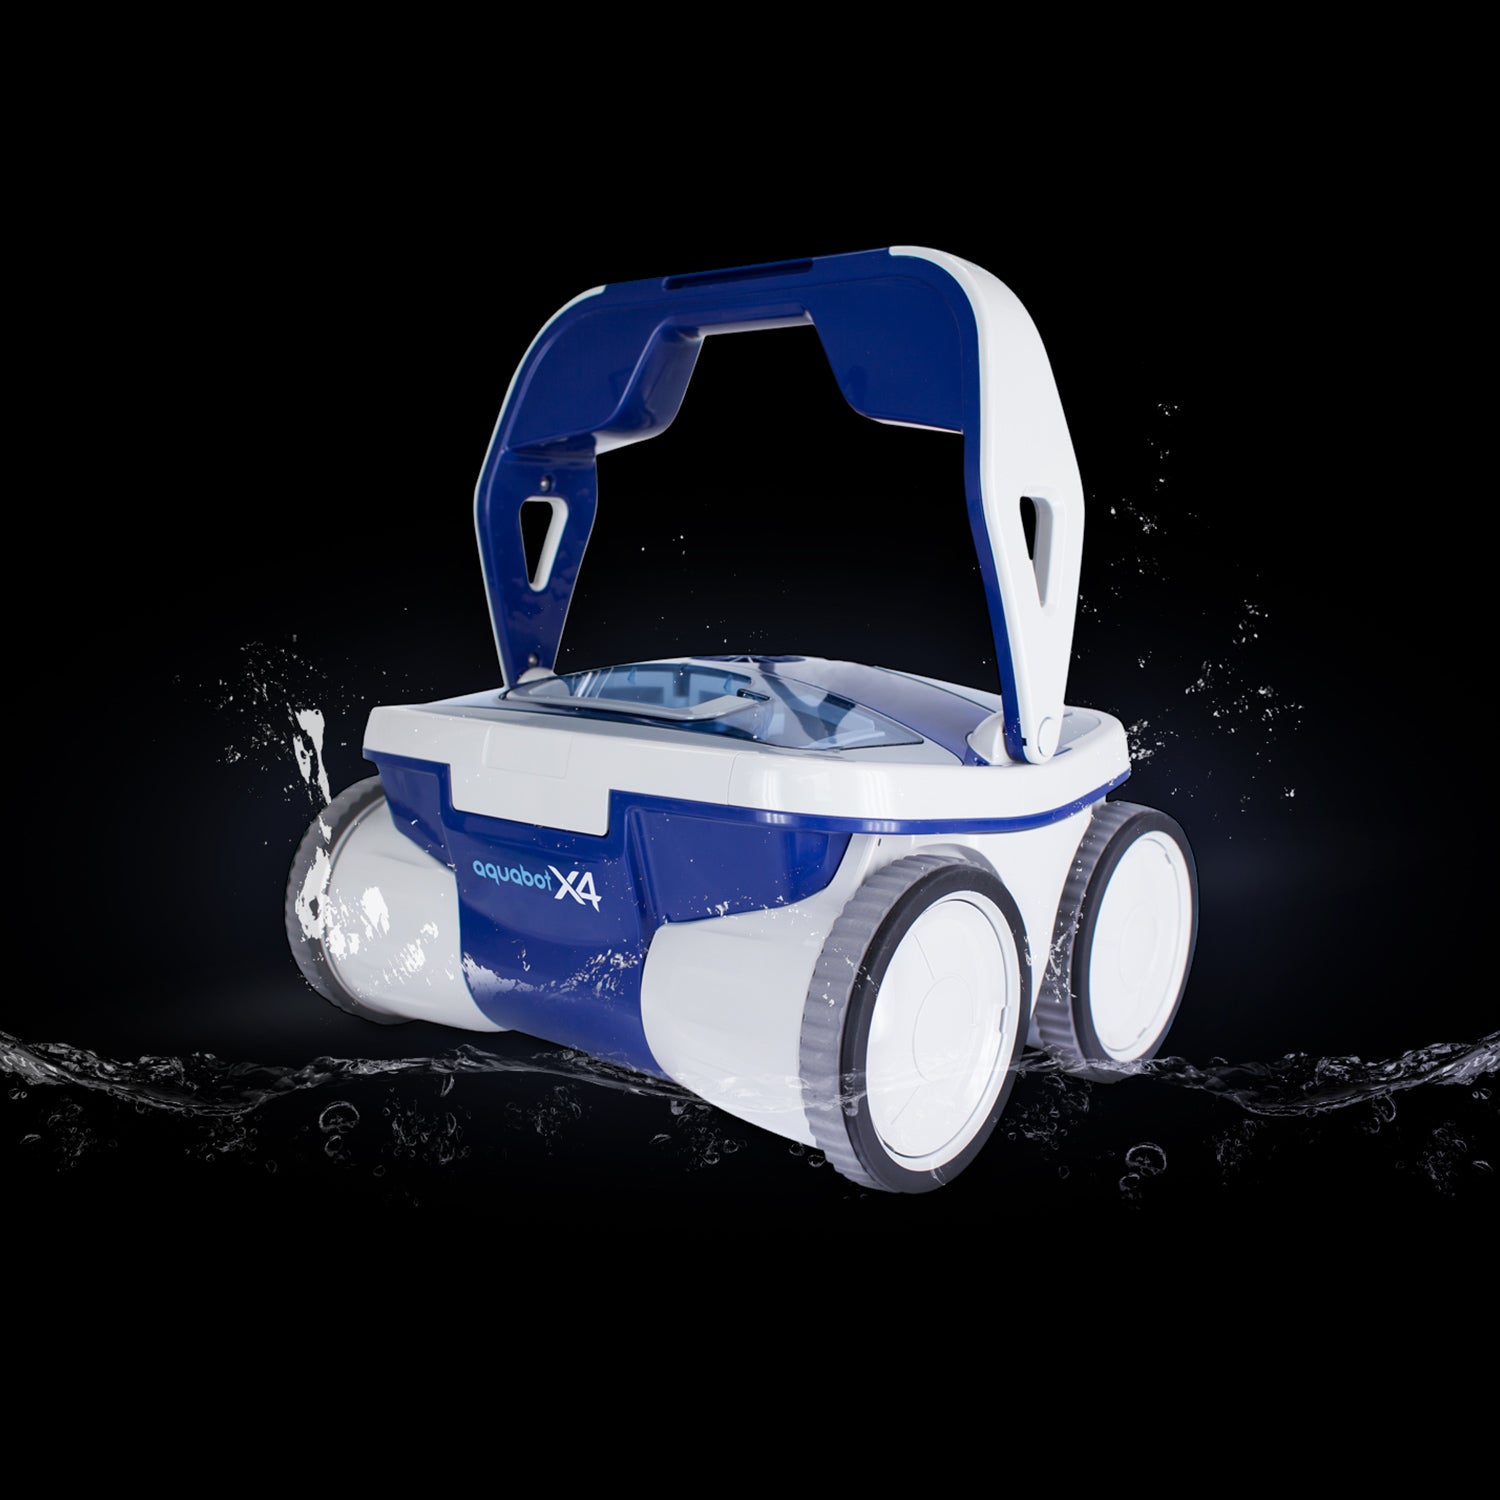 Aquabot Robotic Pool Cleaners